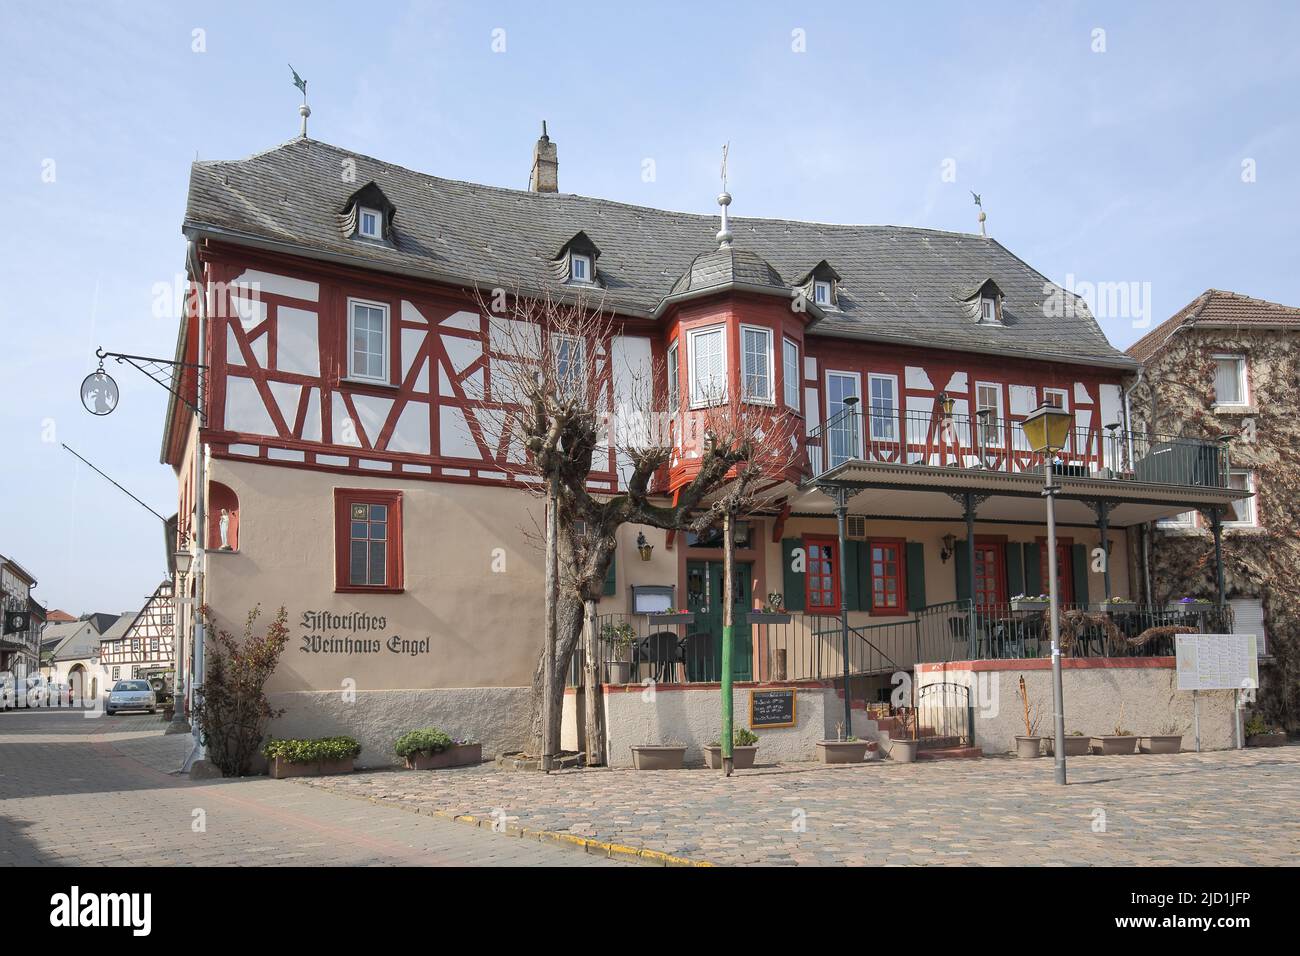 Historisches Fachwerkhaus Weinhaus zum Engel auf dem Marktplatz in Kiedrich, Rheingau, Taunus, Hessen, Deutschland Stockfoto